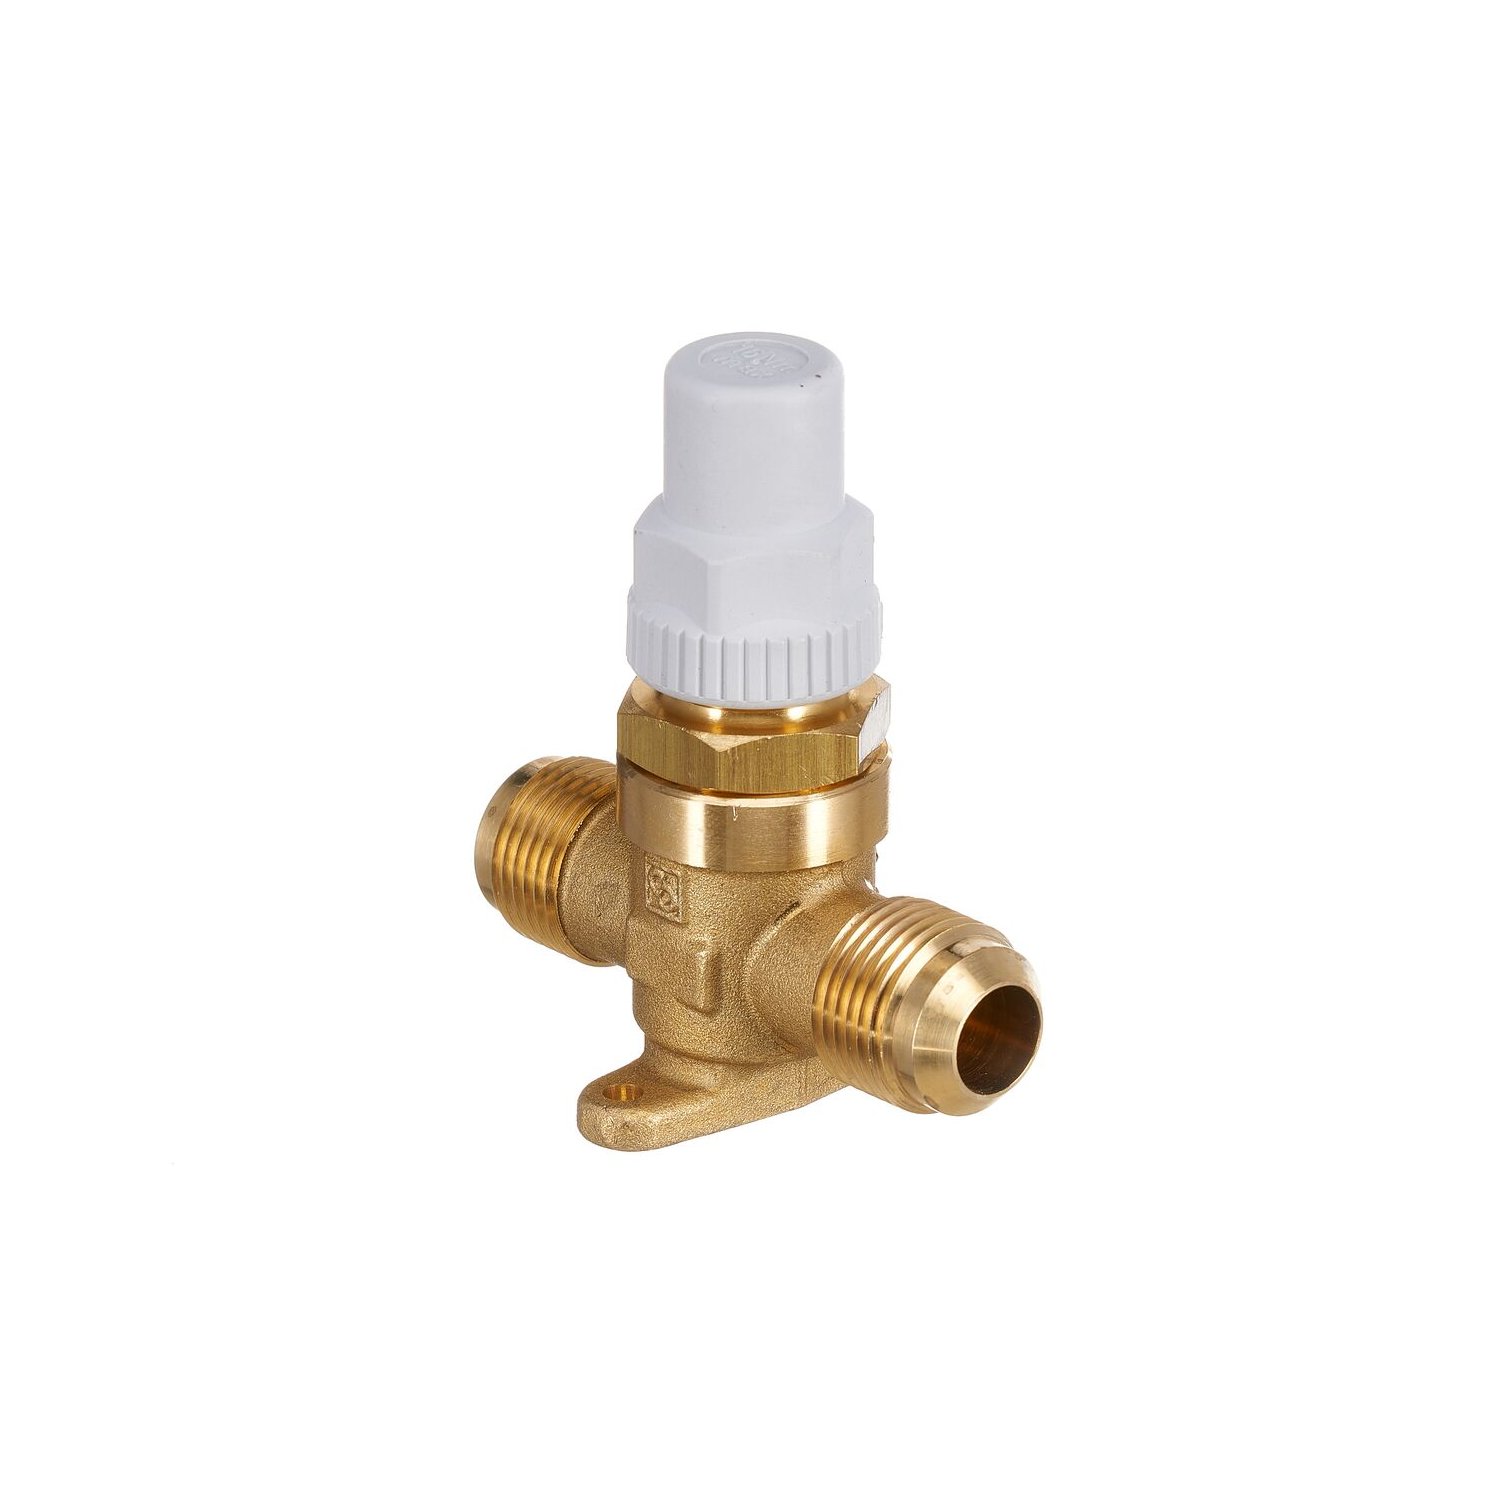 Shut-off valve Castel 6410/5, 5/8 "SAE